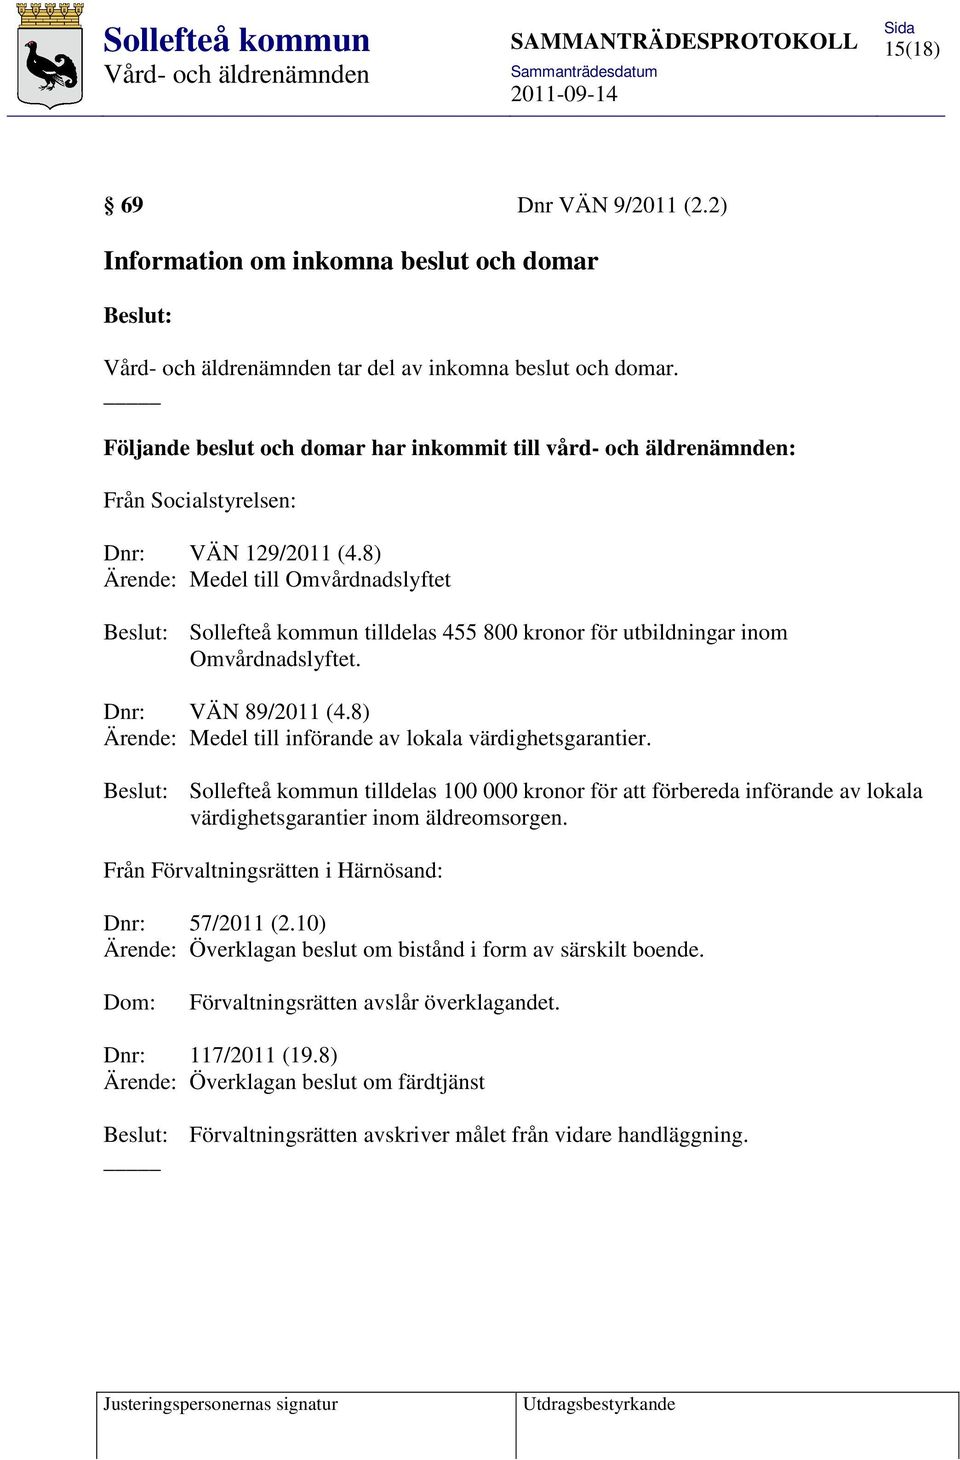 8) Ärende: Medel till Omvårdnadslyftet Sollefteå kommun tilldelas 455 800 kronor för utbildningar inom Omvårdnadslyftet. Dnr: VÄN 89/2011 (4.